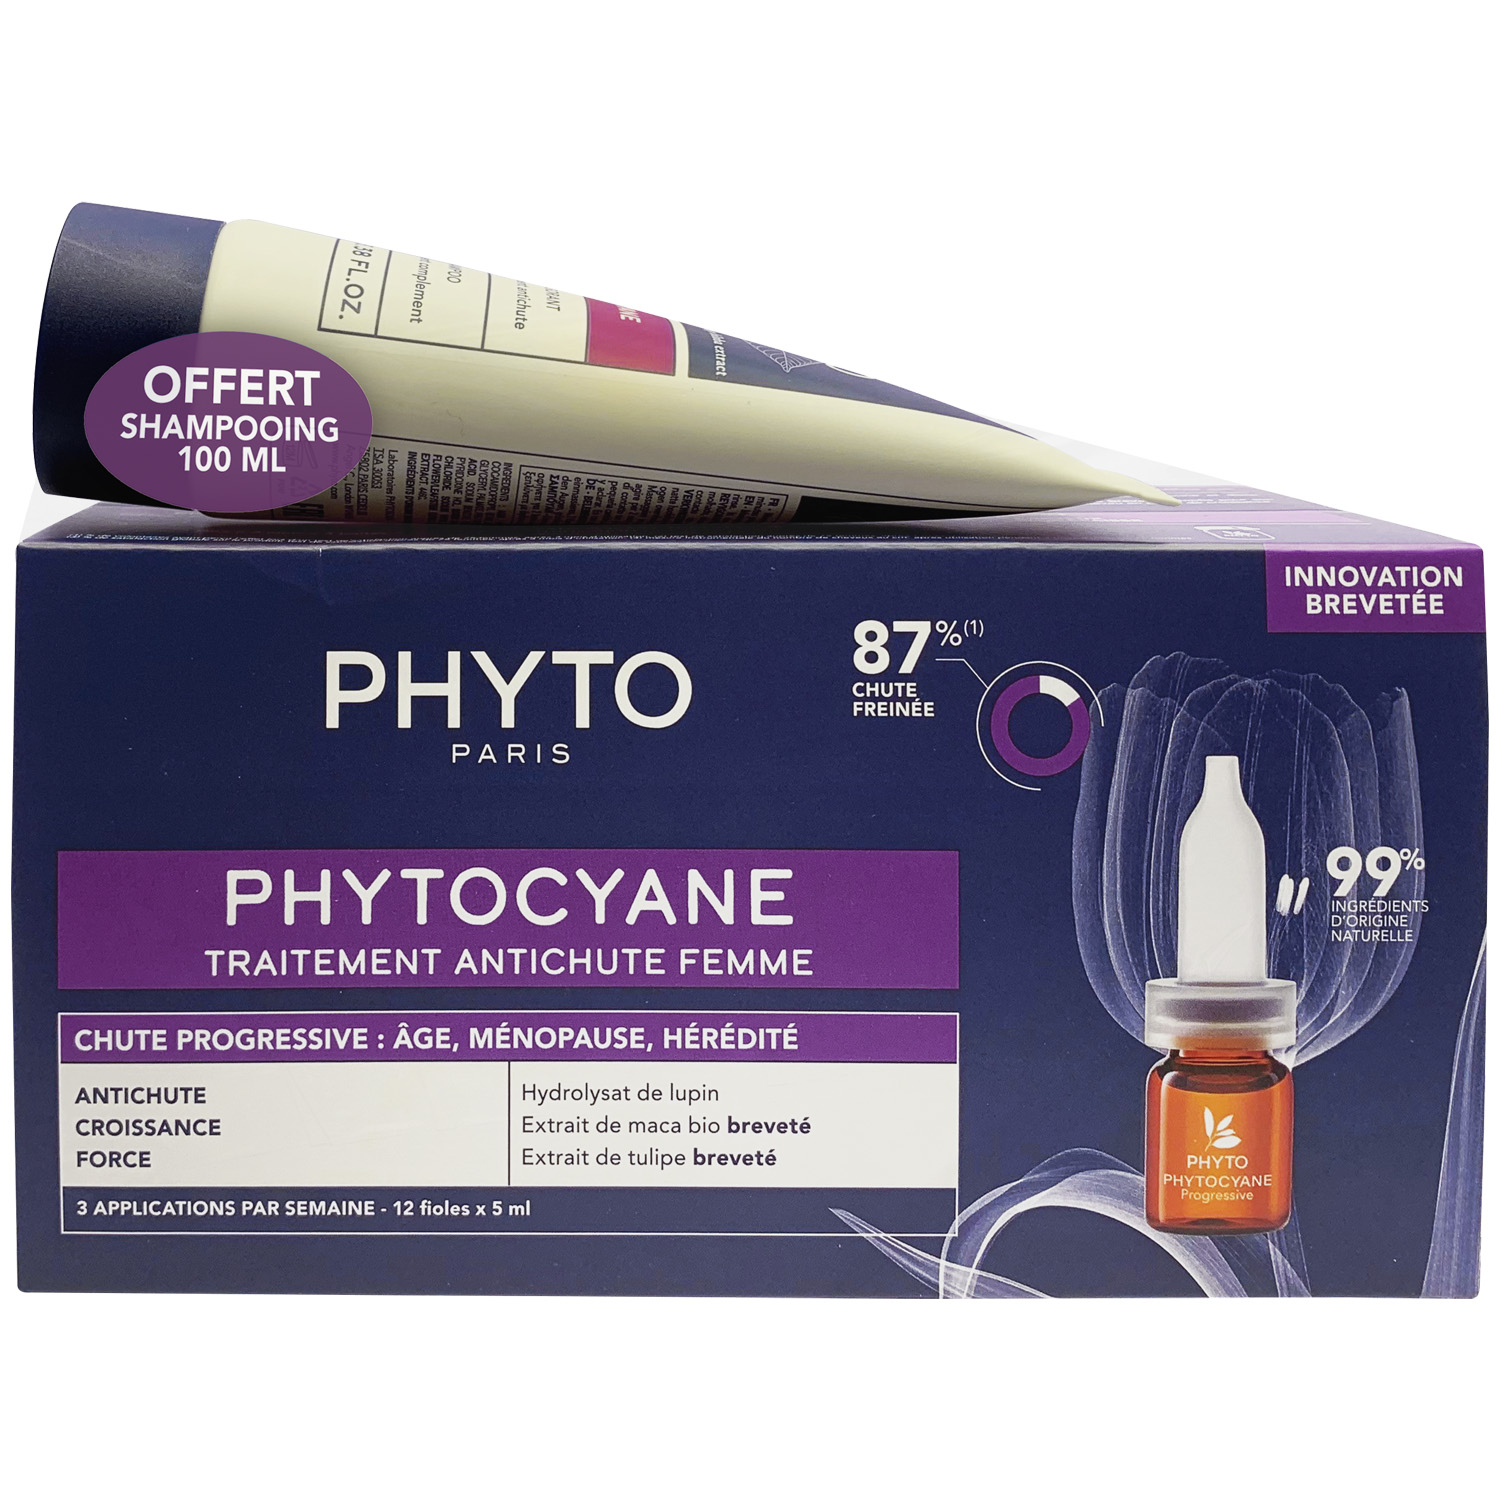 Phyto Набор для женщин: сыворотка от выпадения волос 12х 5мл + укрепляющий шампунь 100 мл (Phyto, Phytocyane) phyto набор для женщин сыворотка от выпадения волос 12x5 мл укрепляющий шампунь 100 мл phyto phytocyane